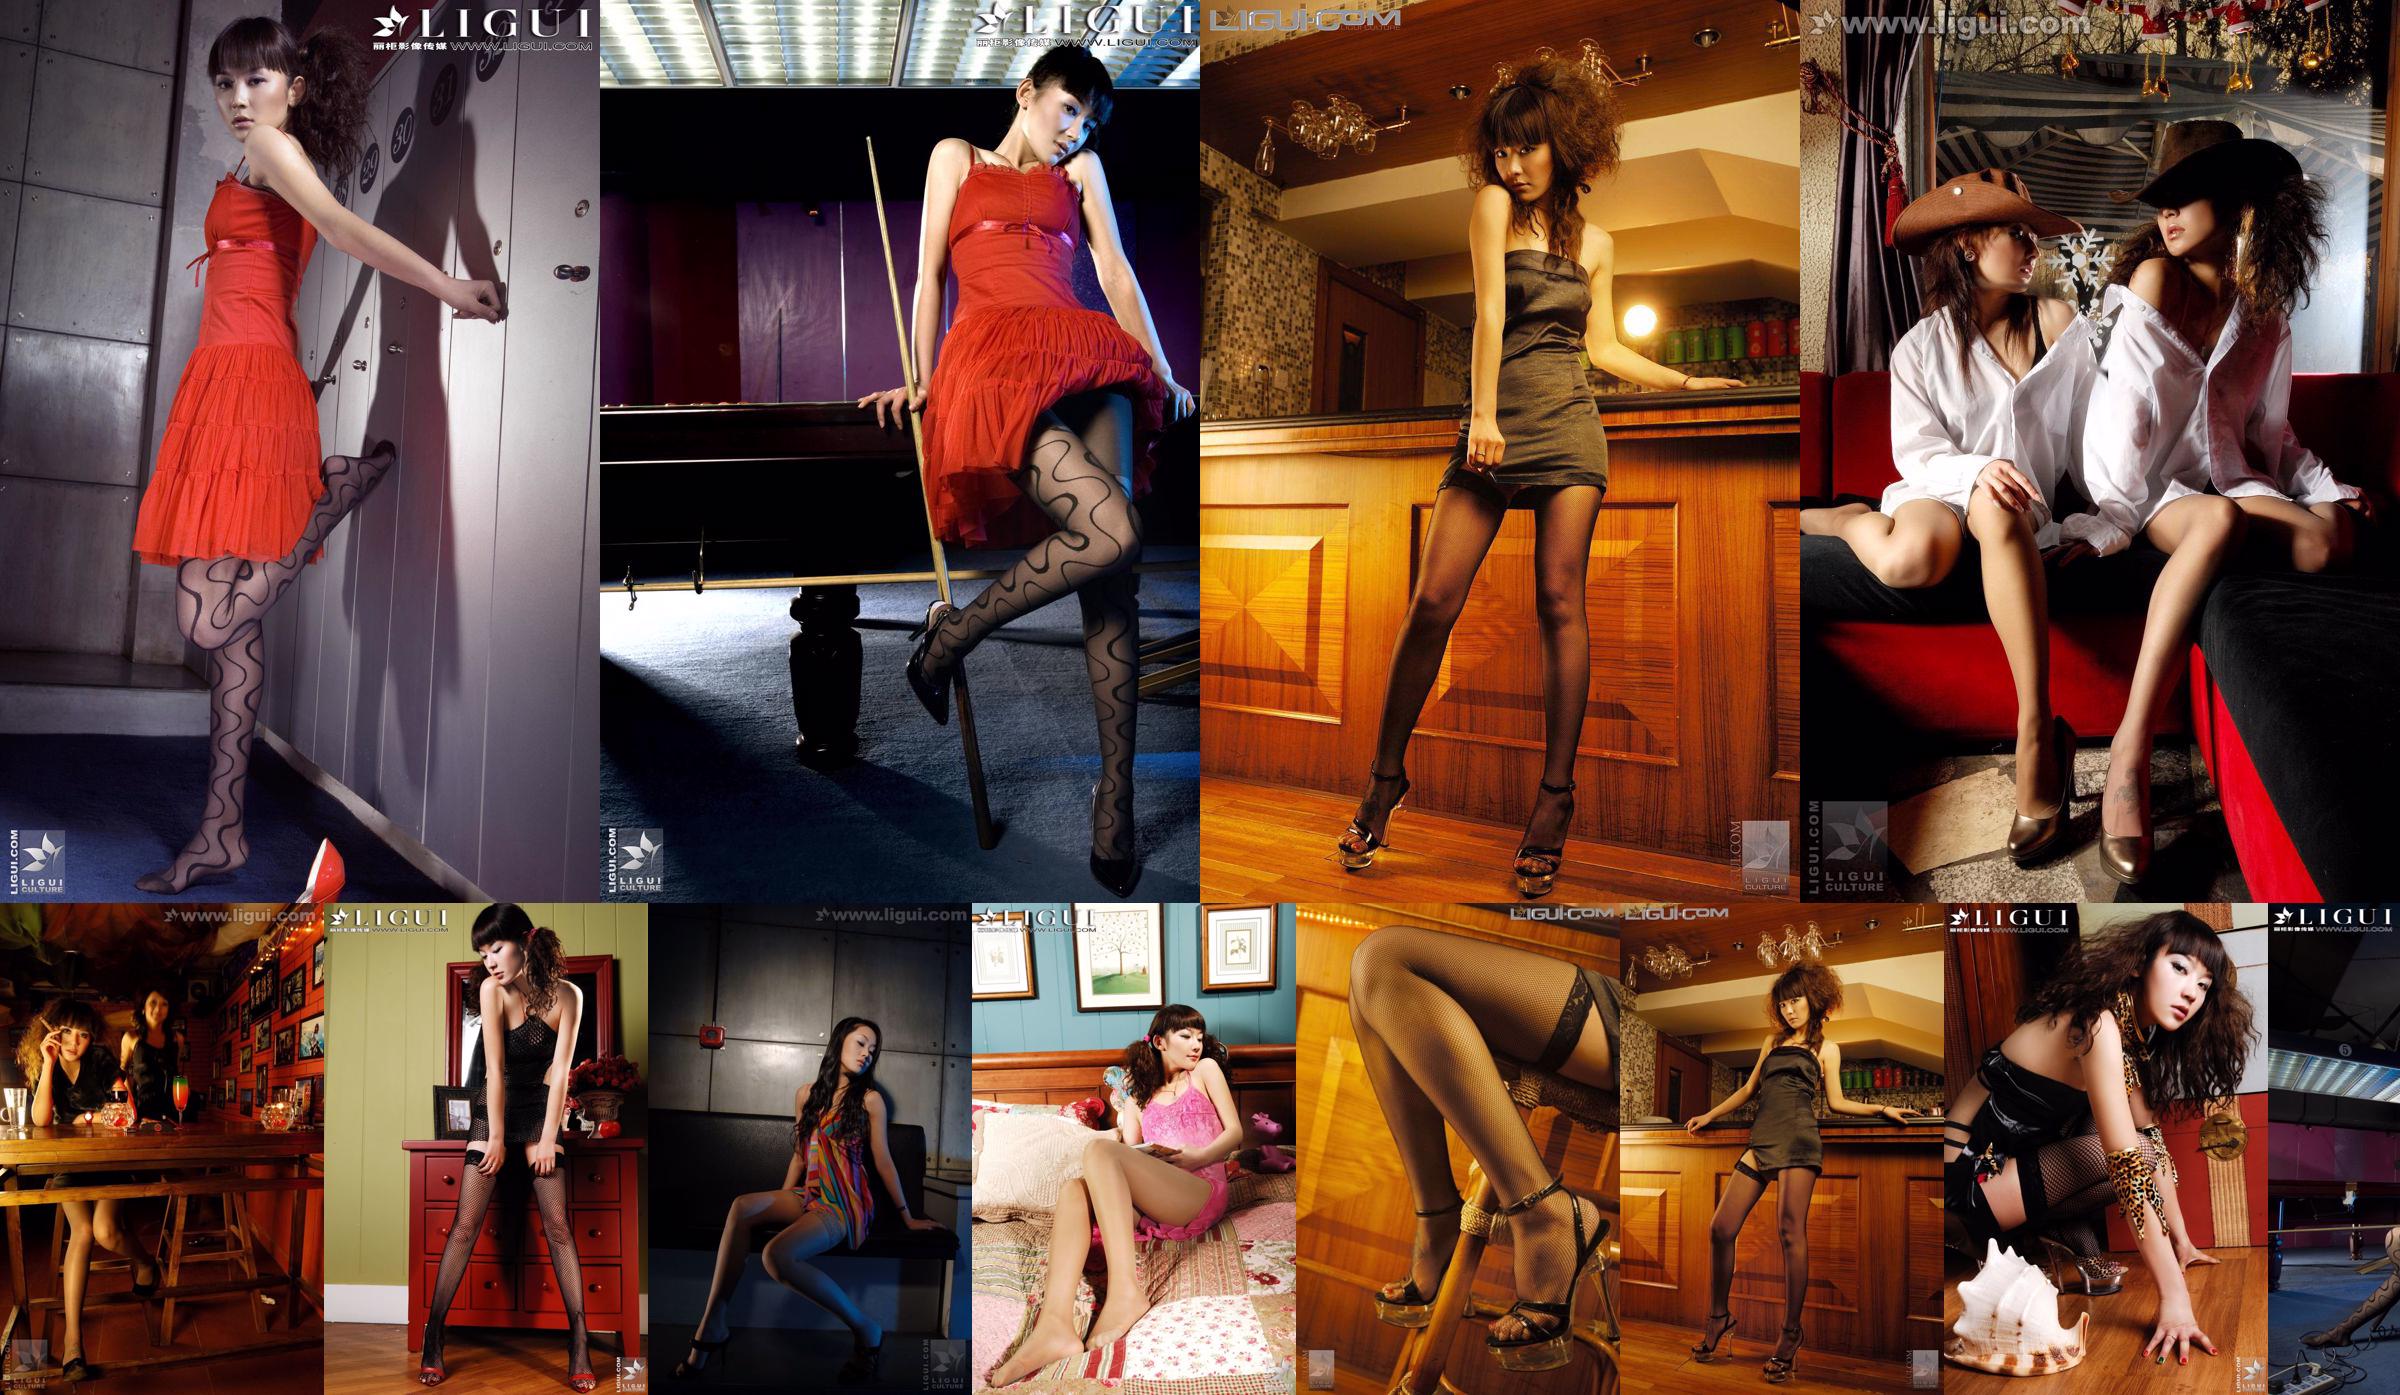 [丽柜LiGui] Model Mi Huimei, kelly "The Temptation of Stockings" Beautiful Legs and Jade Feet Photo Picture No.660600 Page 5